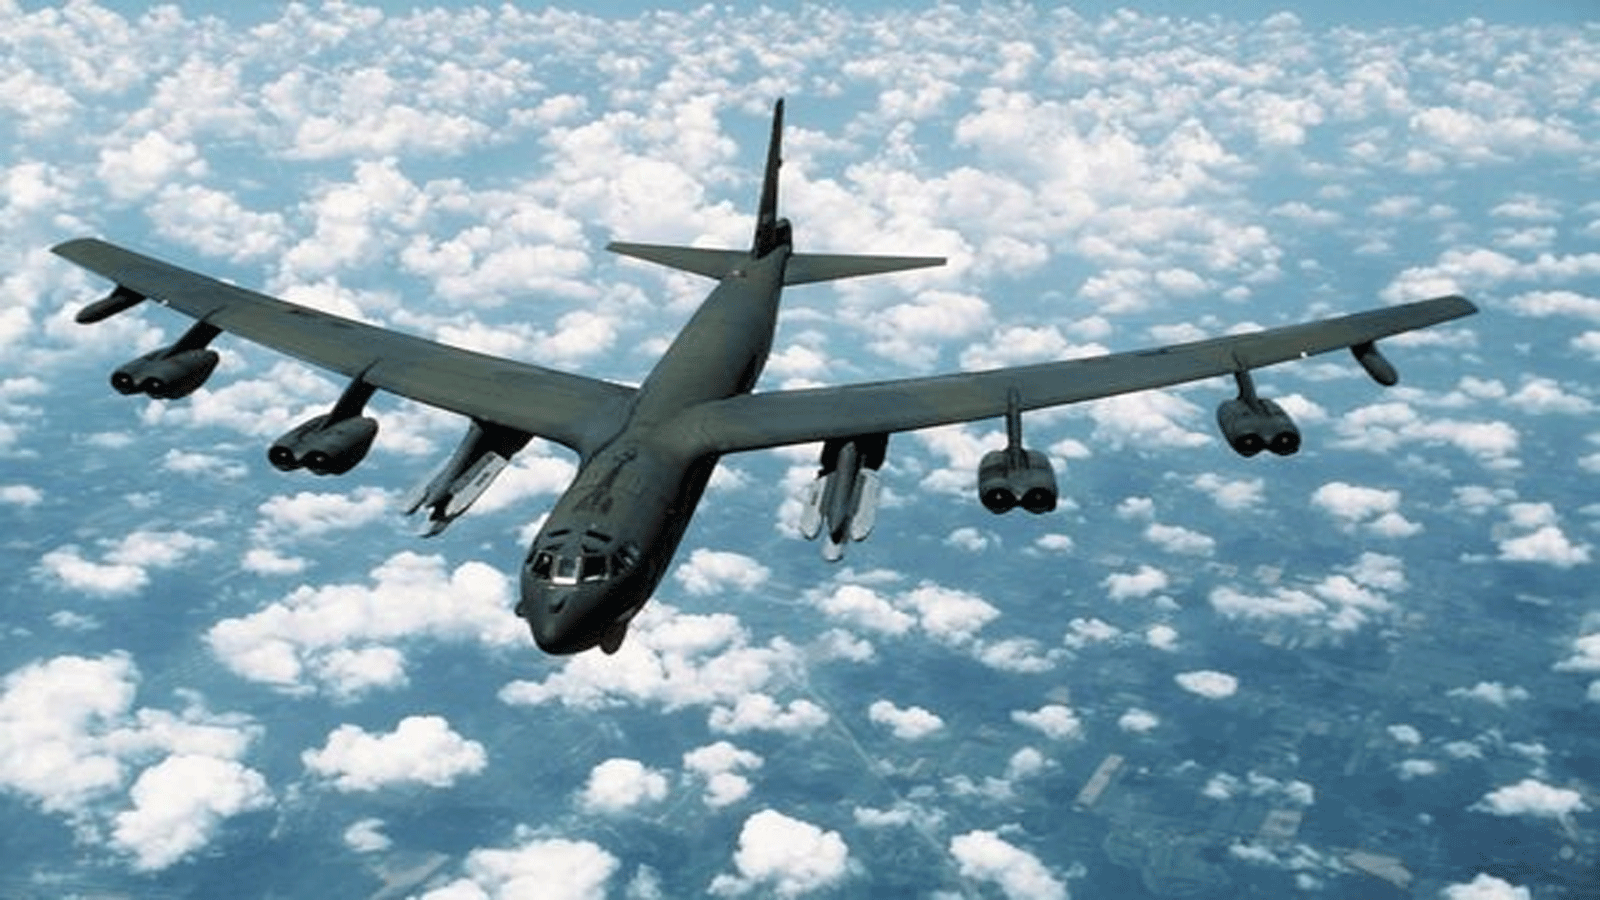 قاذفة استراتيجية من طراز B-52H مزودة بصاروخ كروز AGM-86 البديل الجوي